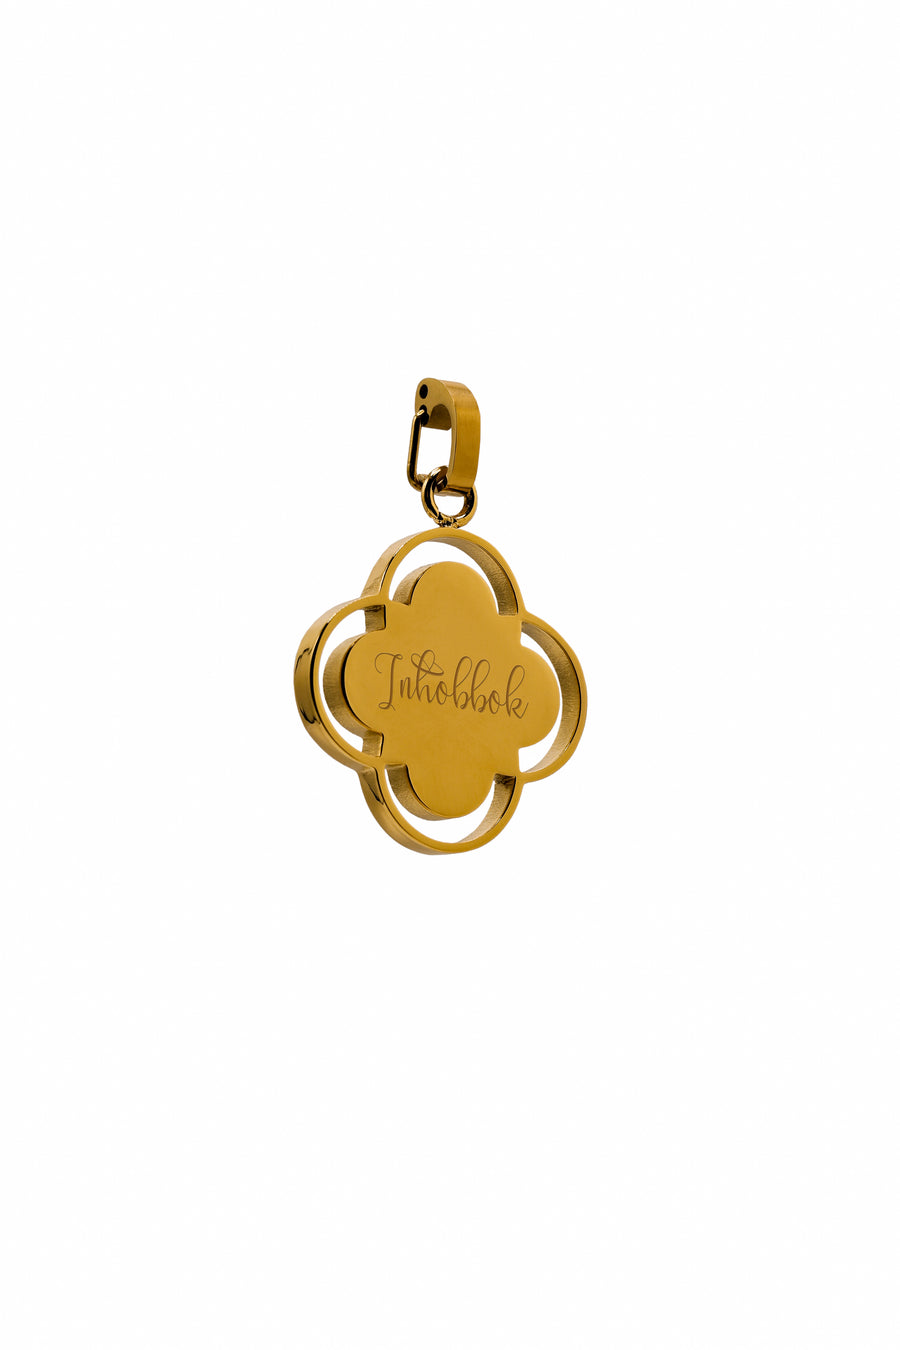 "Qalb ta' Qalbi" or "Inħobbok" Carisma Pendant & "Qalbi" Earring Set Gift Set